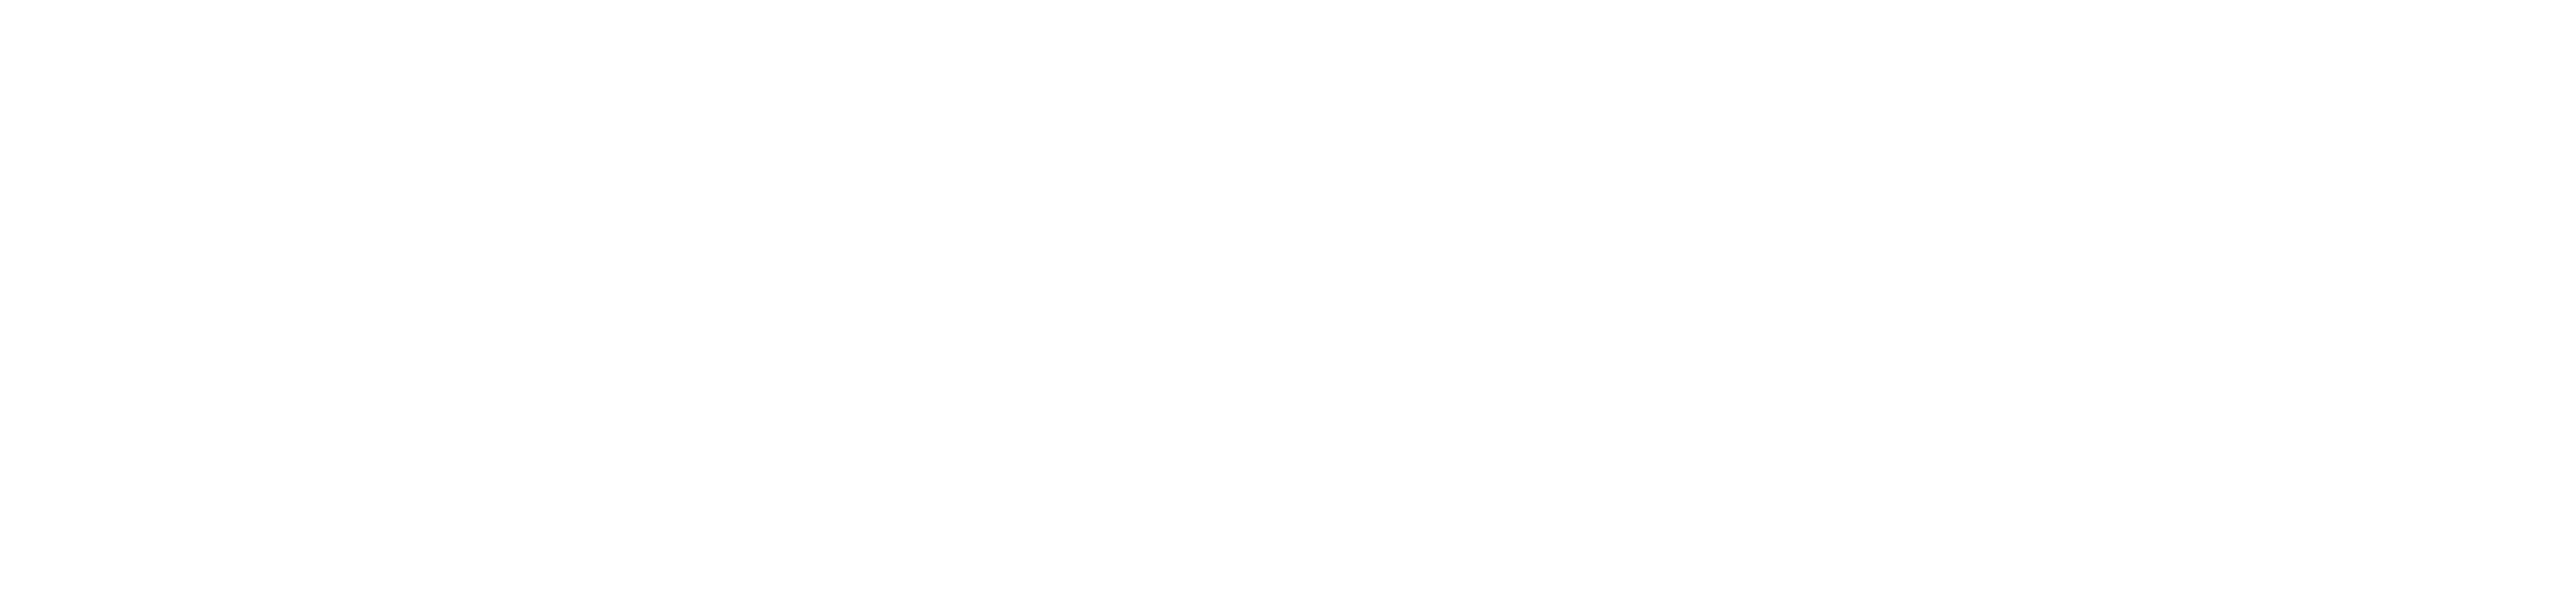 BidMax